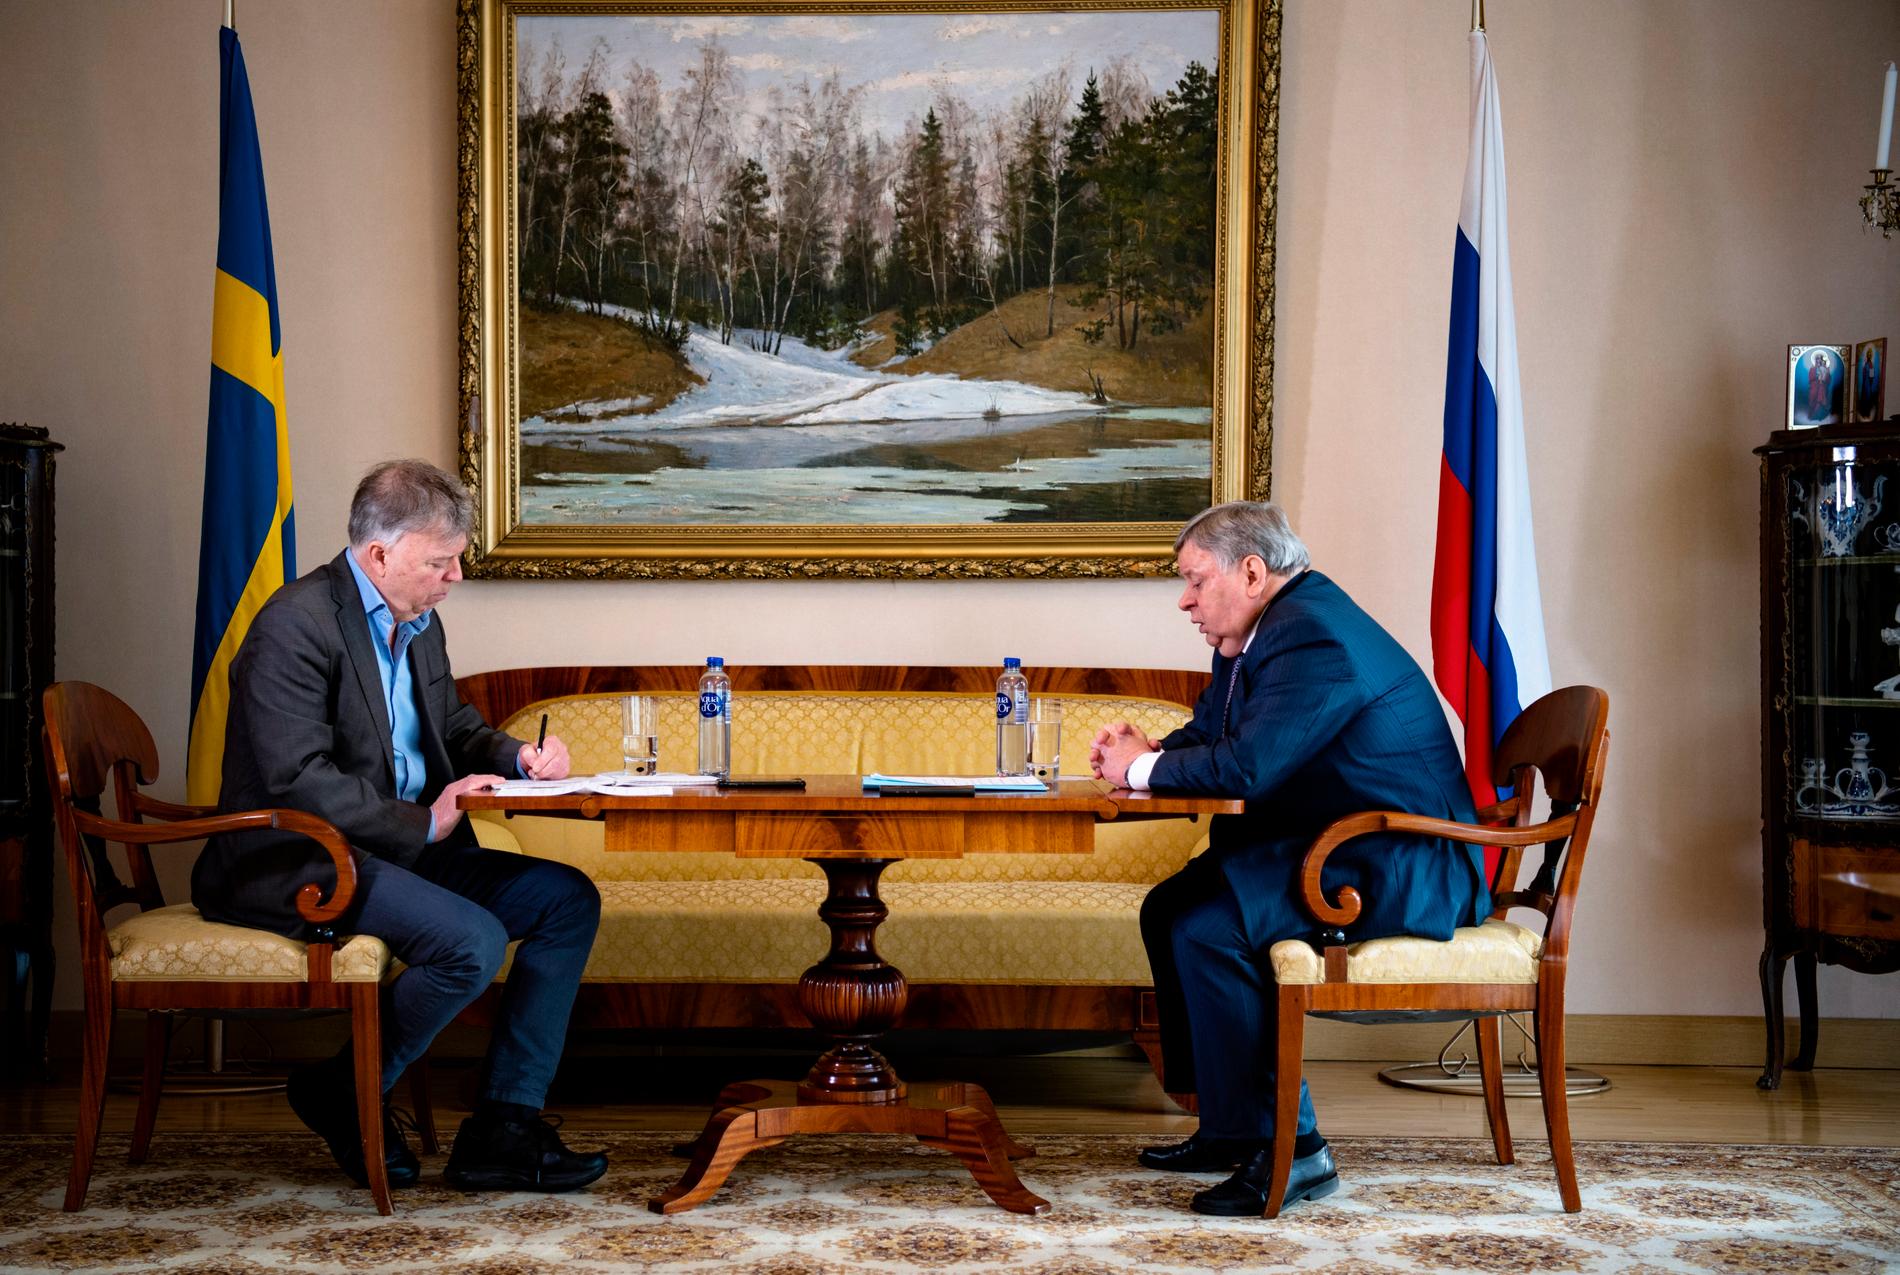 Rysslands ambassadör Viktor Tatarintsev intervjuades av Wolfgang Hansson om säkerhetsläget i februari 2022.